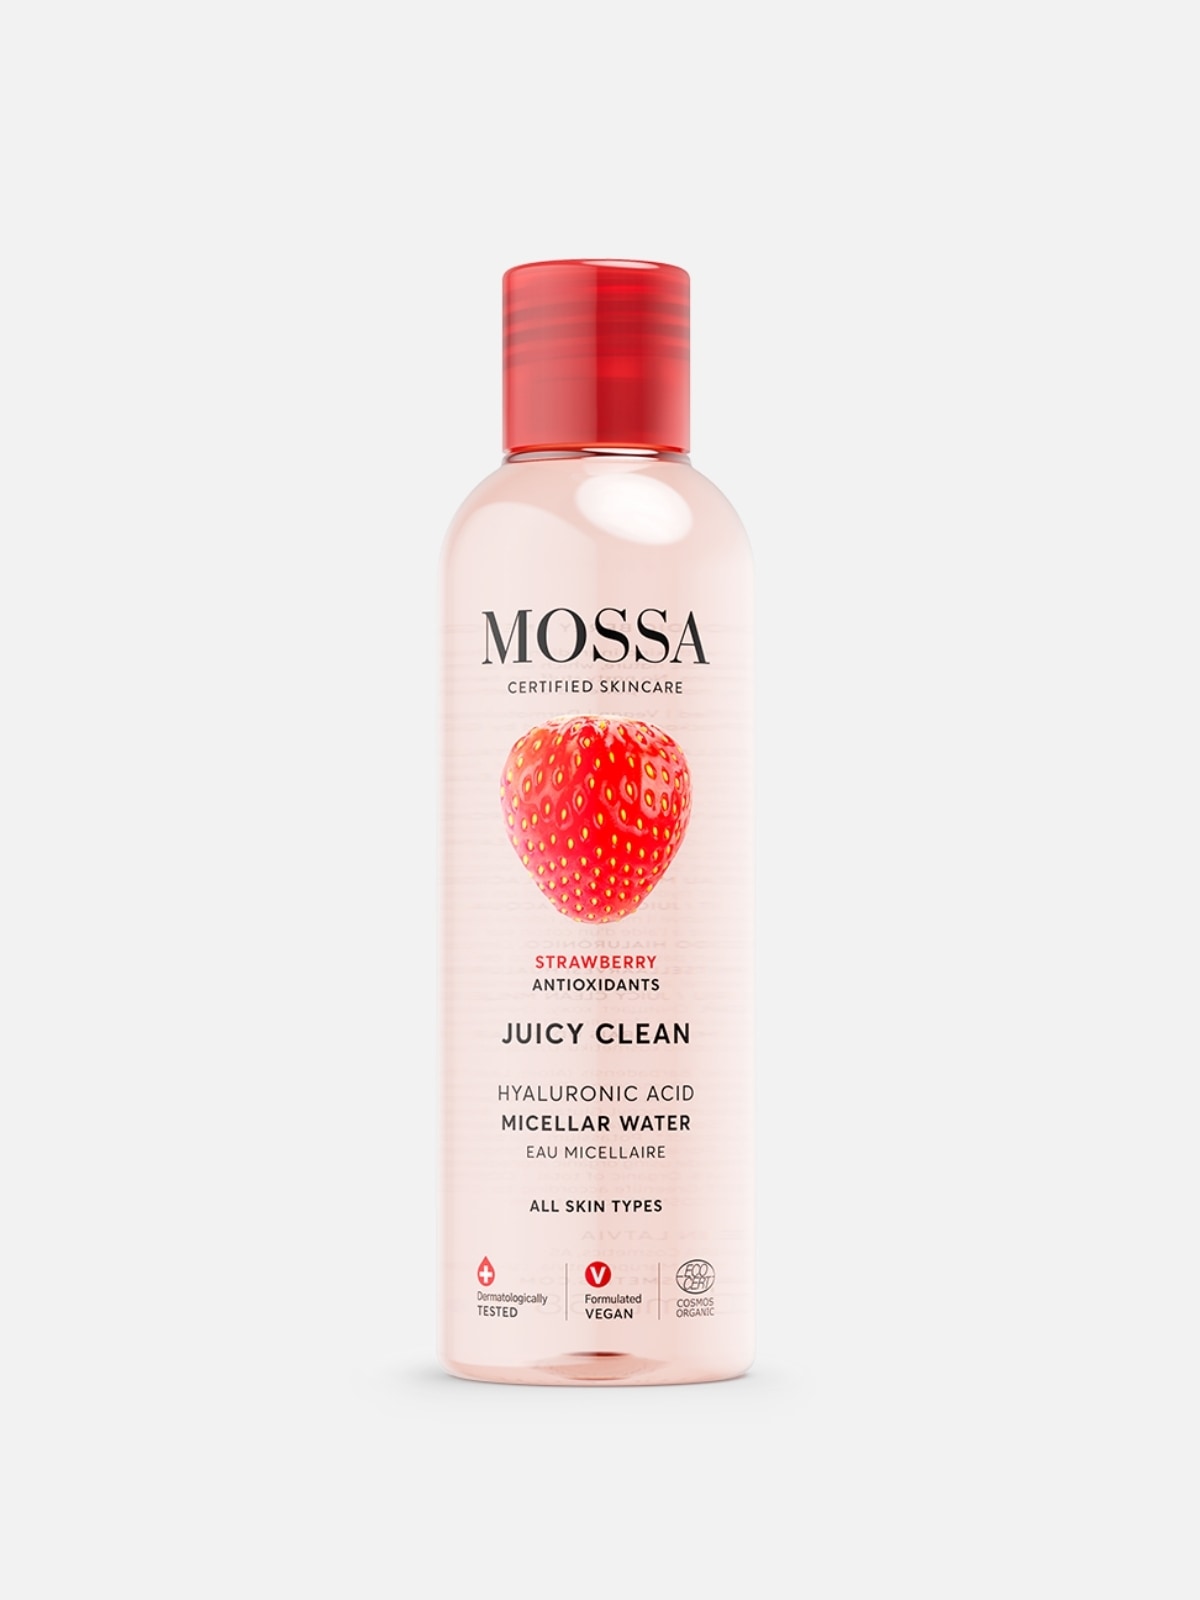 MOSSA - Juicy Clean Hyaluronic Acid Micellar Water - Acqua micellare con vitamine della fragola